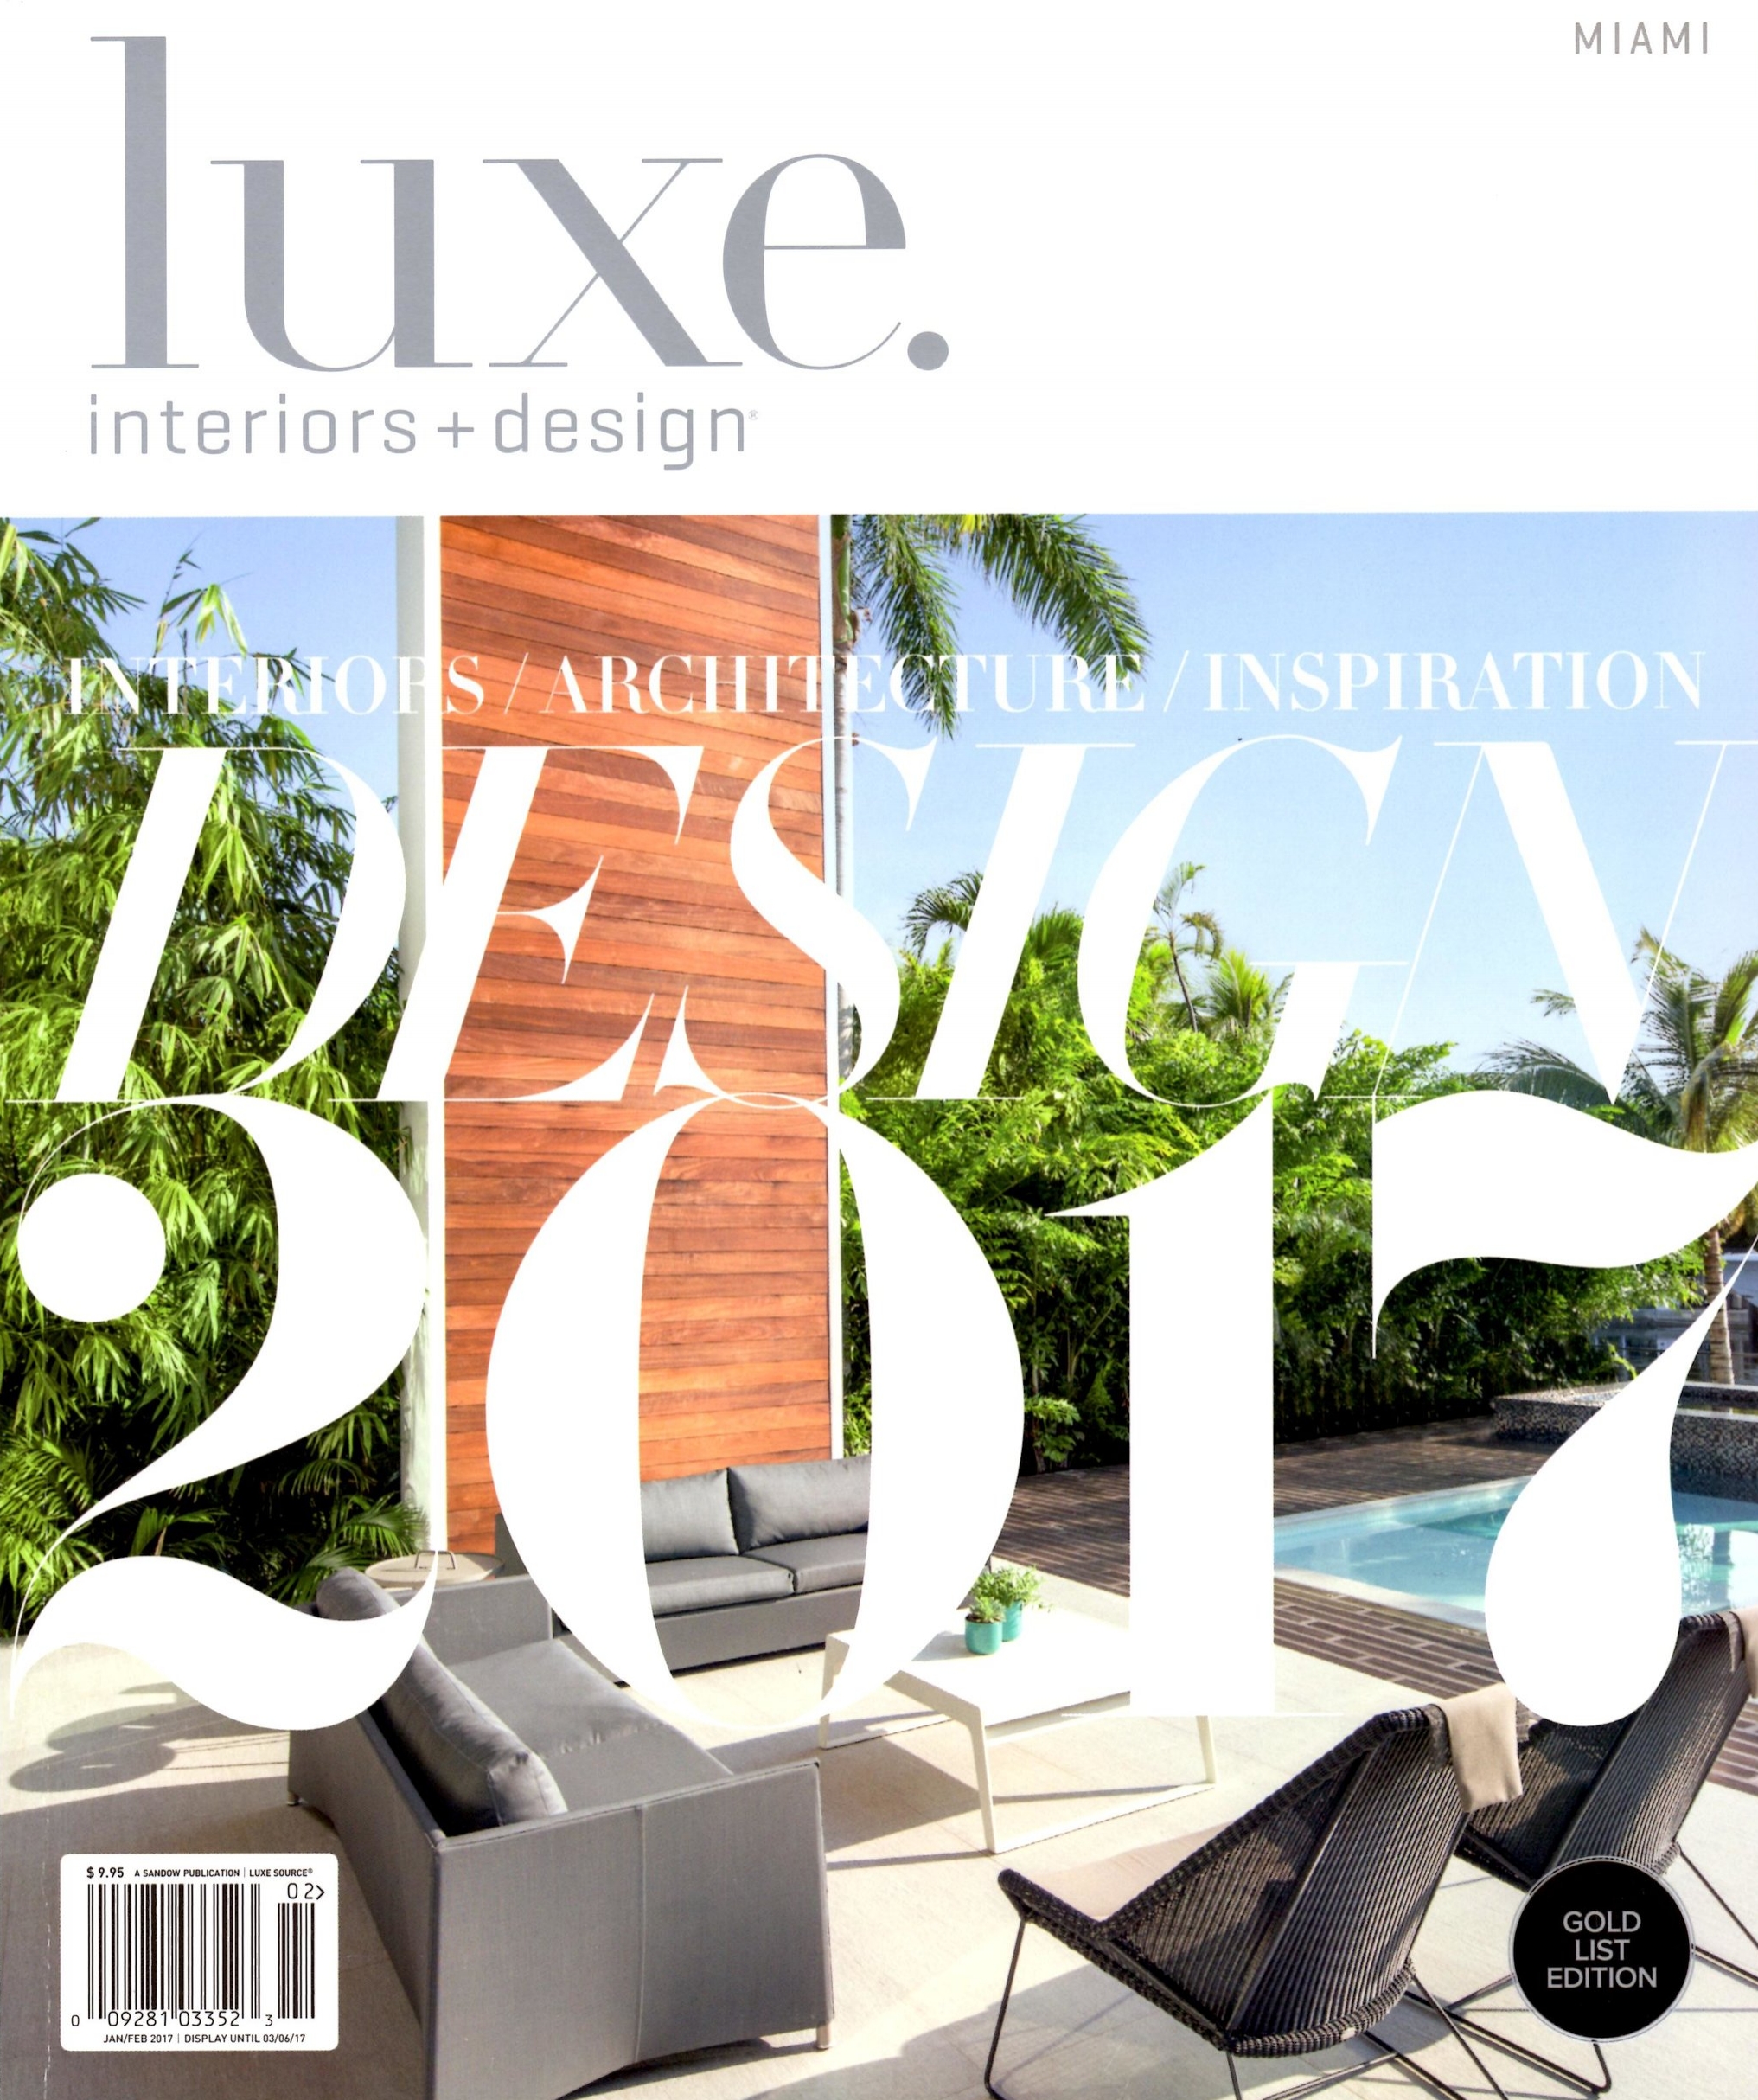 Luxe Magazine